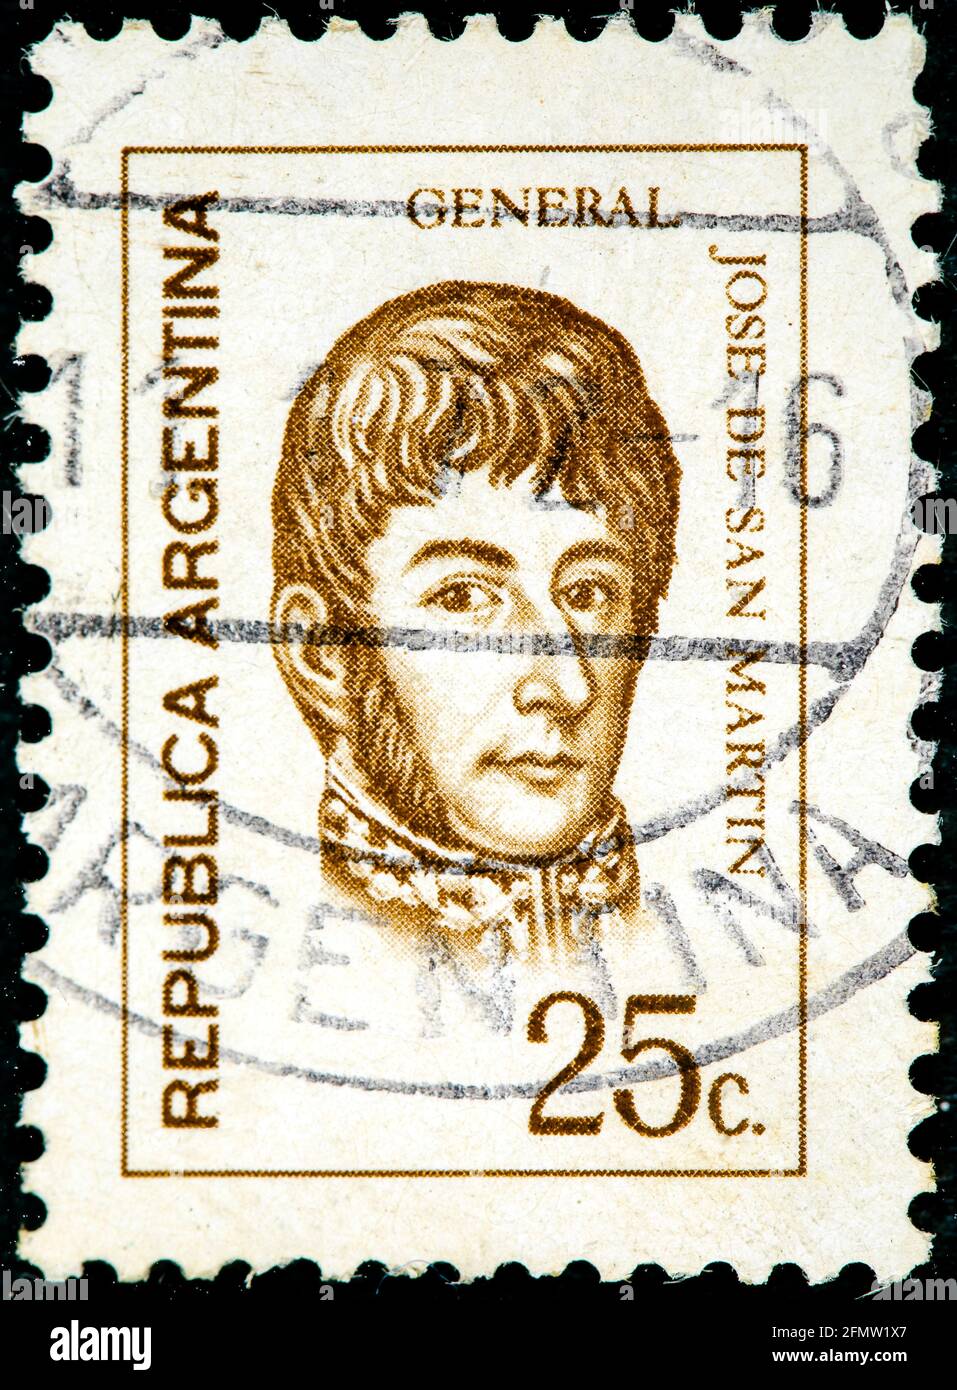 ARGENTINE - VERS 1971: Un timbre imprimé en Argentine montre José de San Martin général vers 1971 Banque D'Images